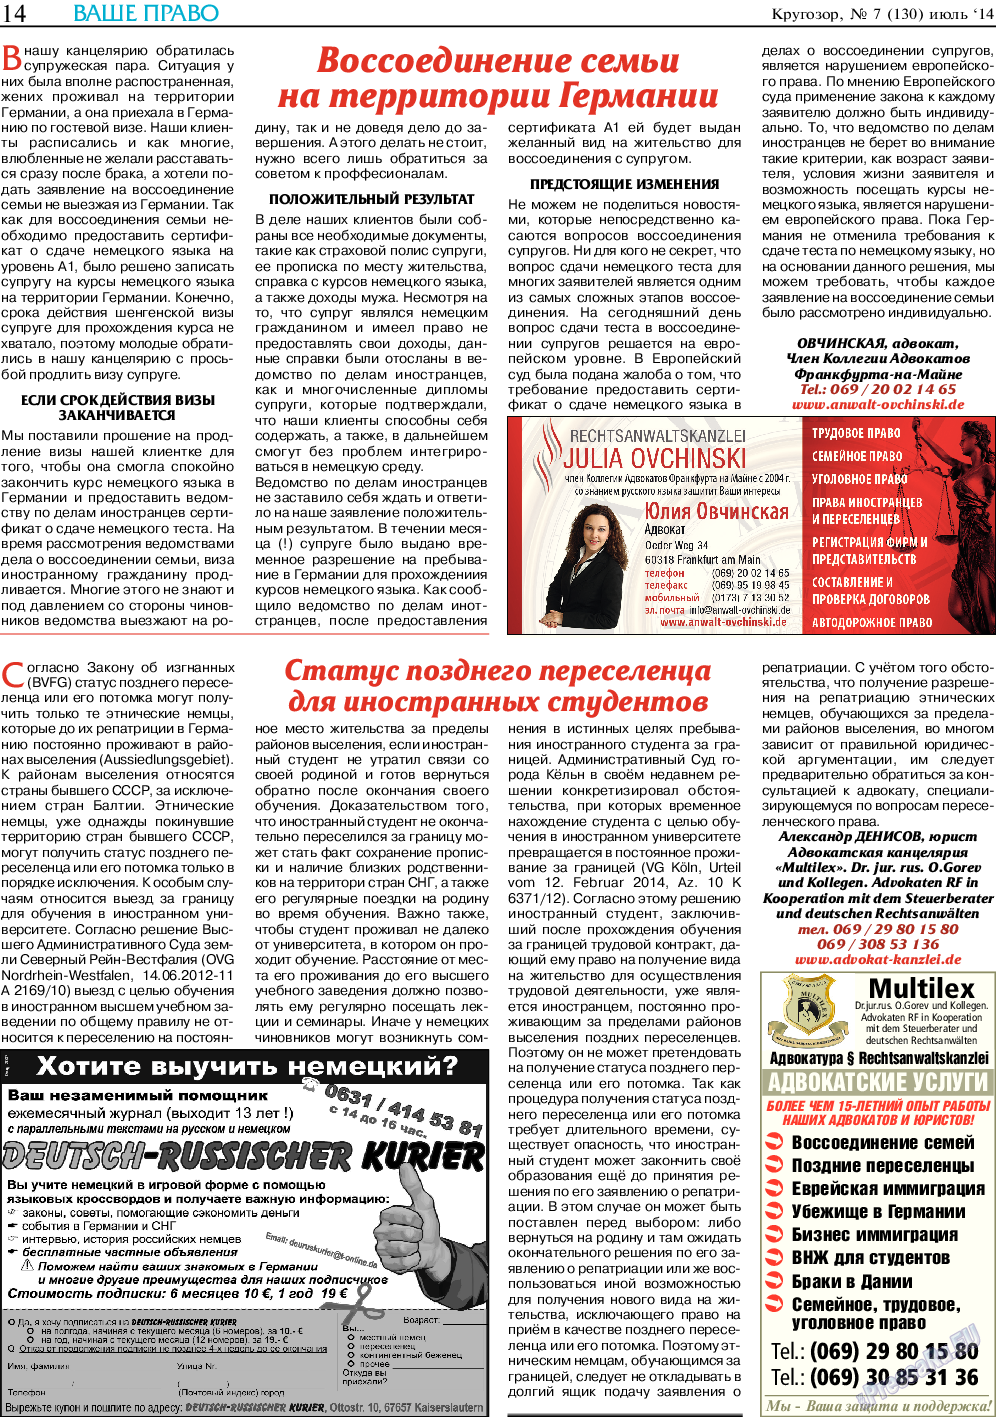 Кругозор, газета. 2014 №7 стр.14